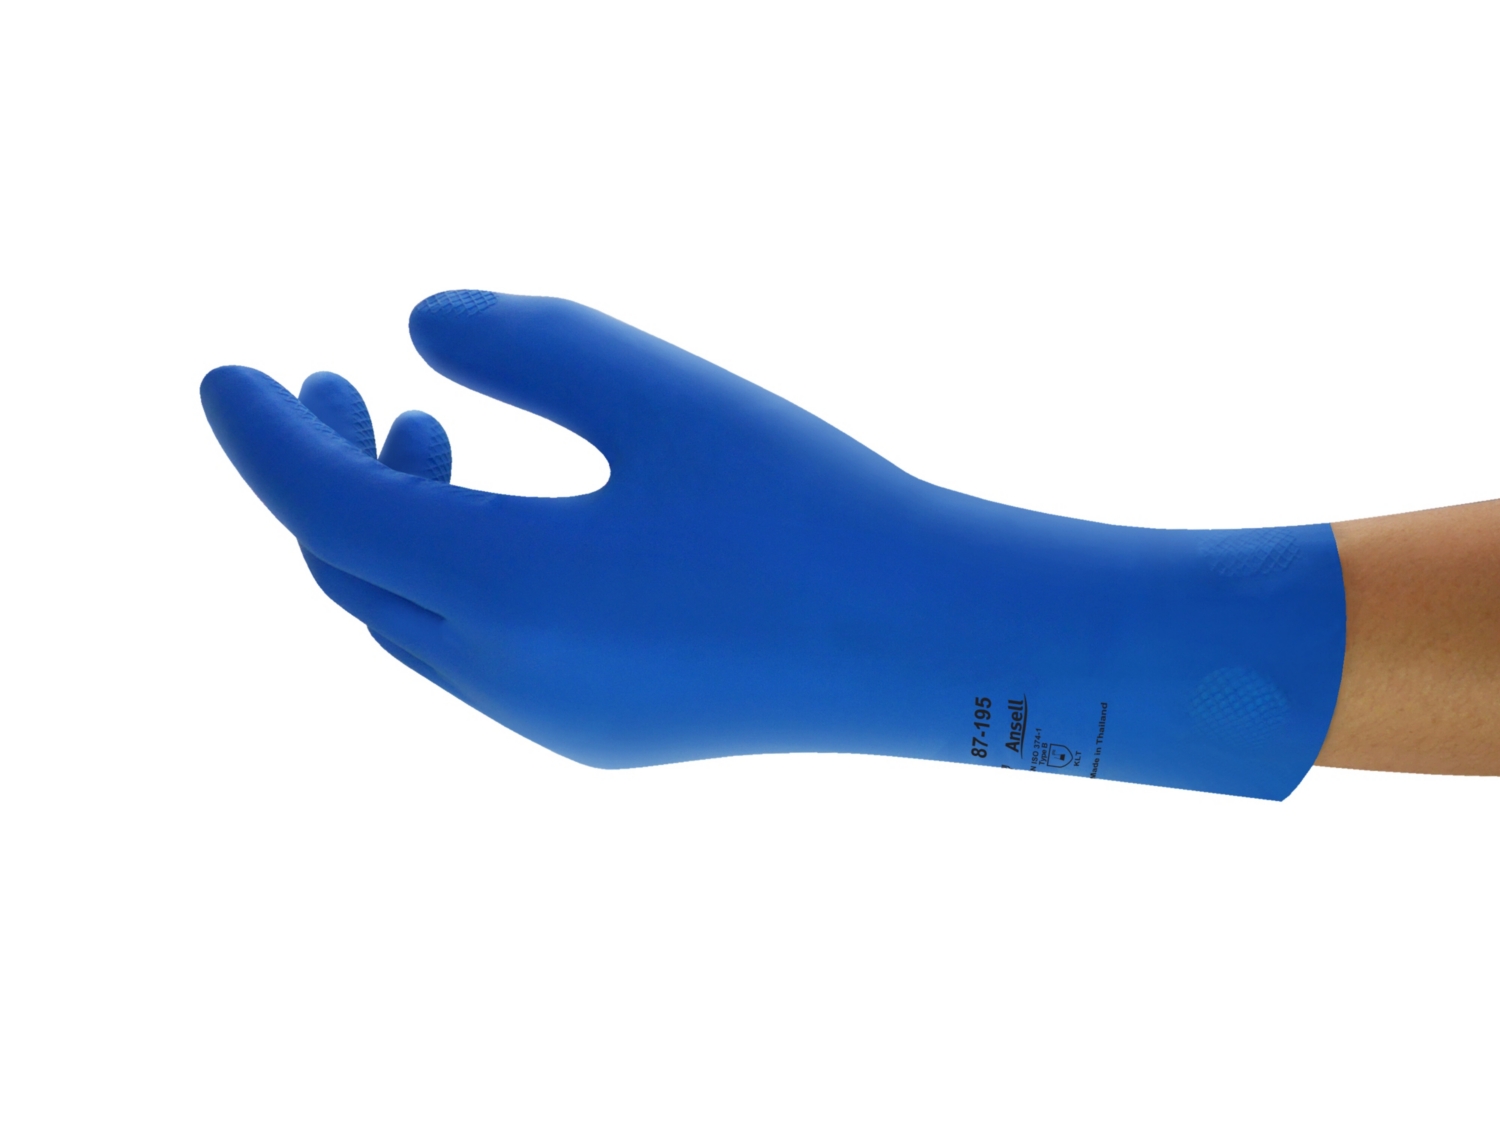 Achetez DSTOCK60 – Paire de gants MAPA Professional harpon 326- bleu –  TAILLE 6, gants en latex de protection chimique, gants rugueux et glissants  pour l'industrie alimentaire, gants de catégorie III